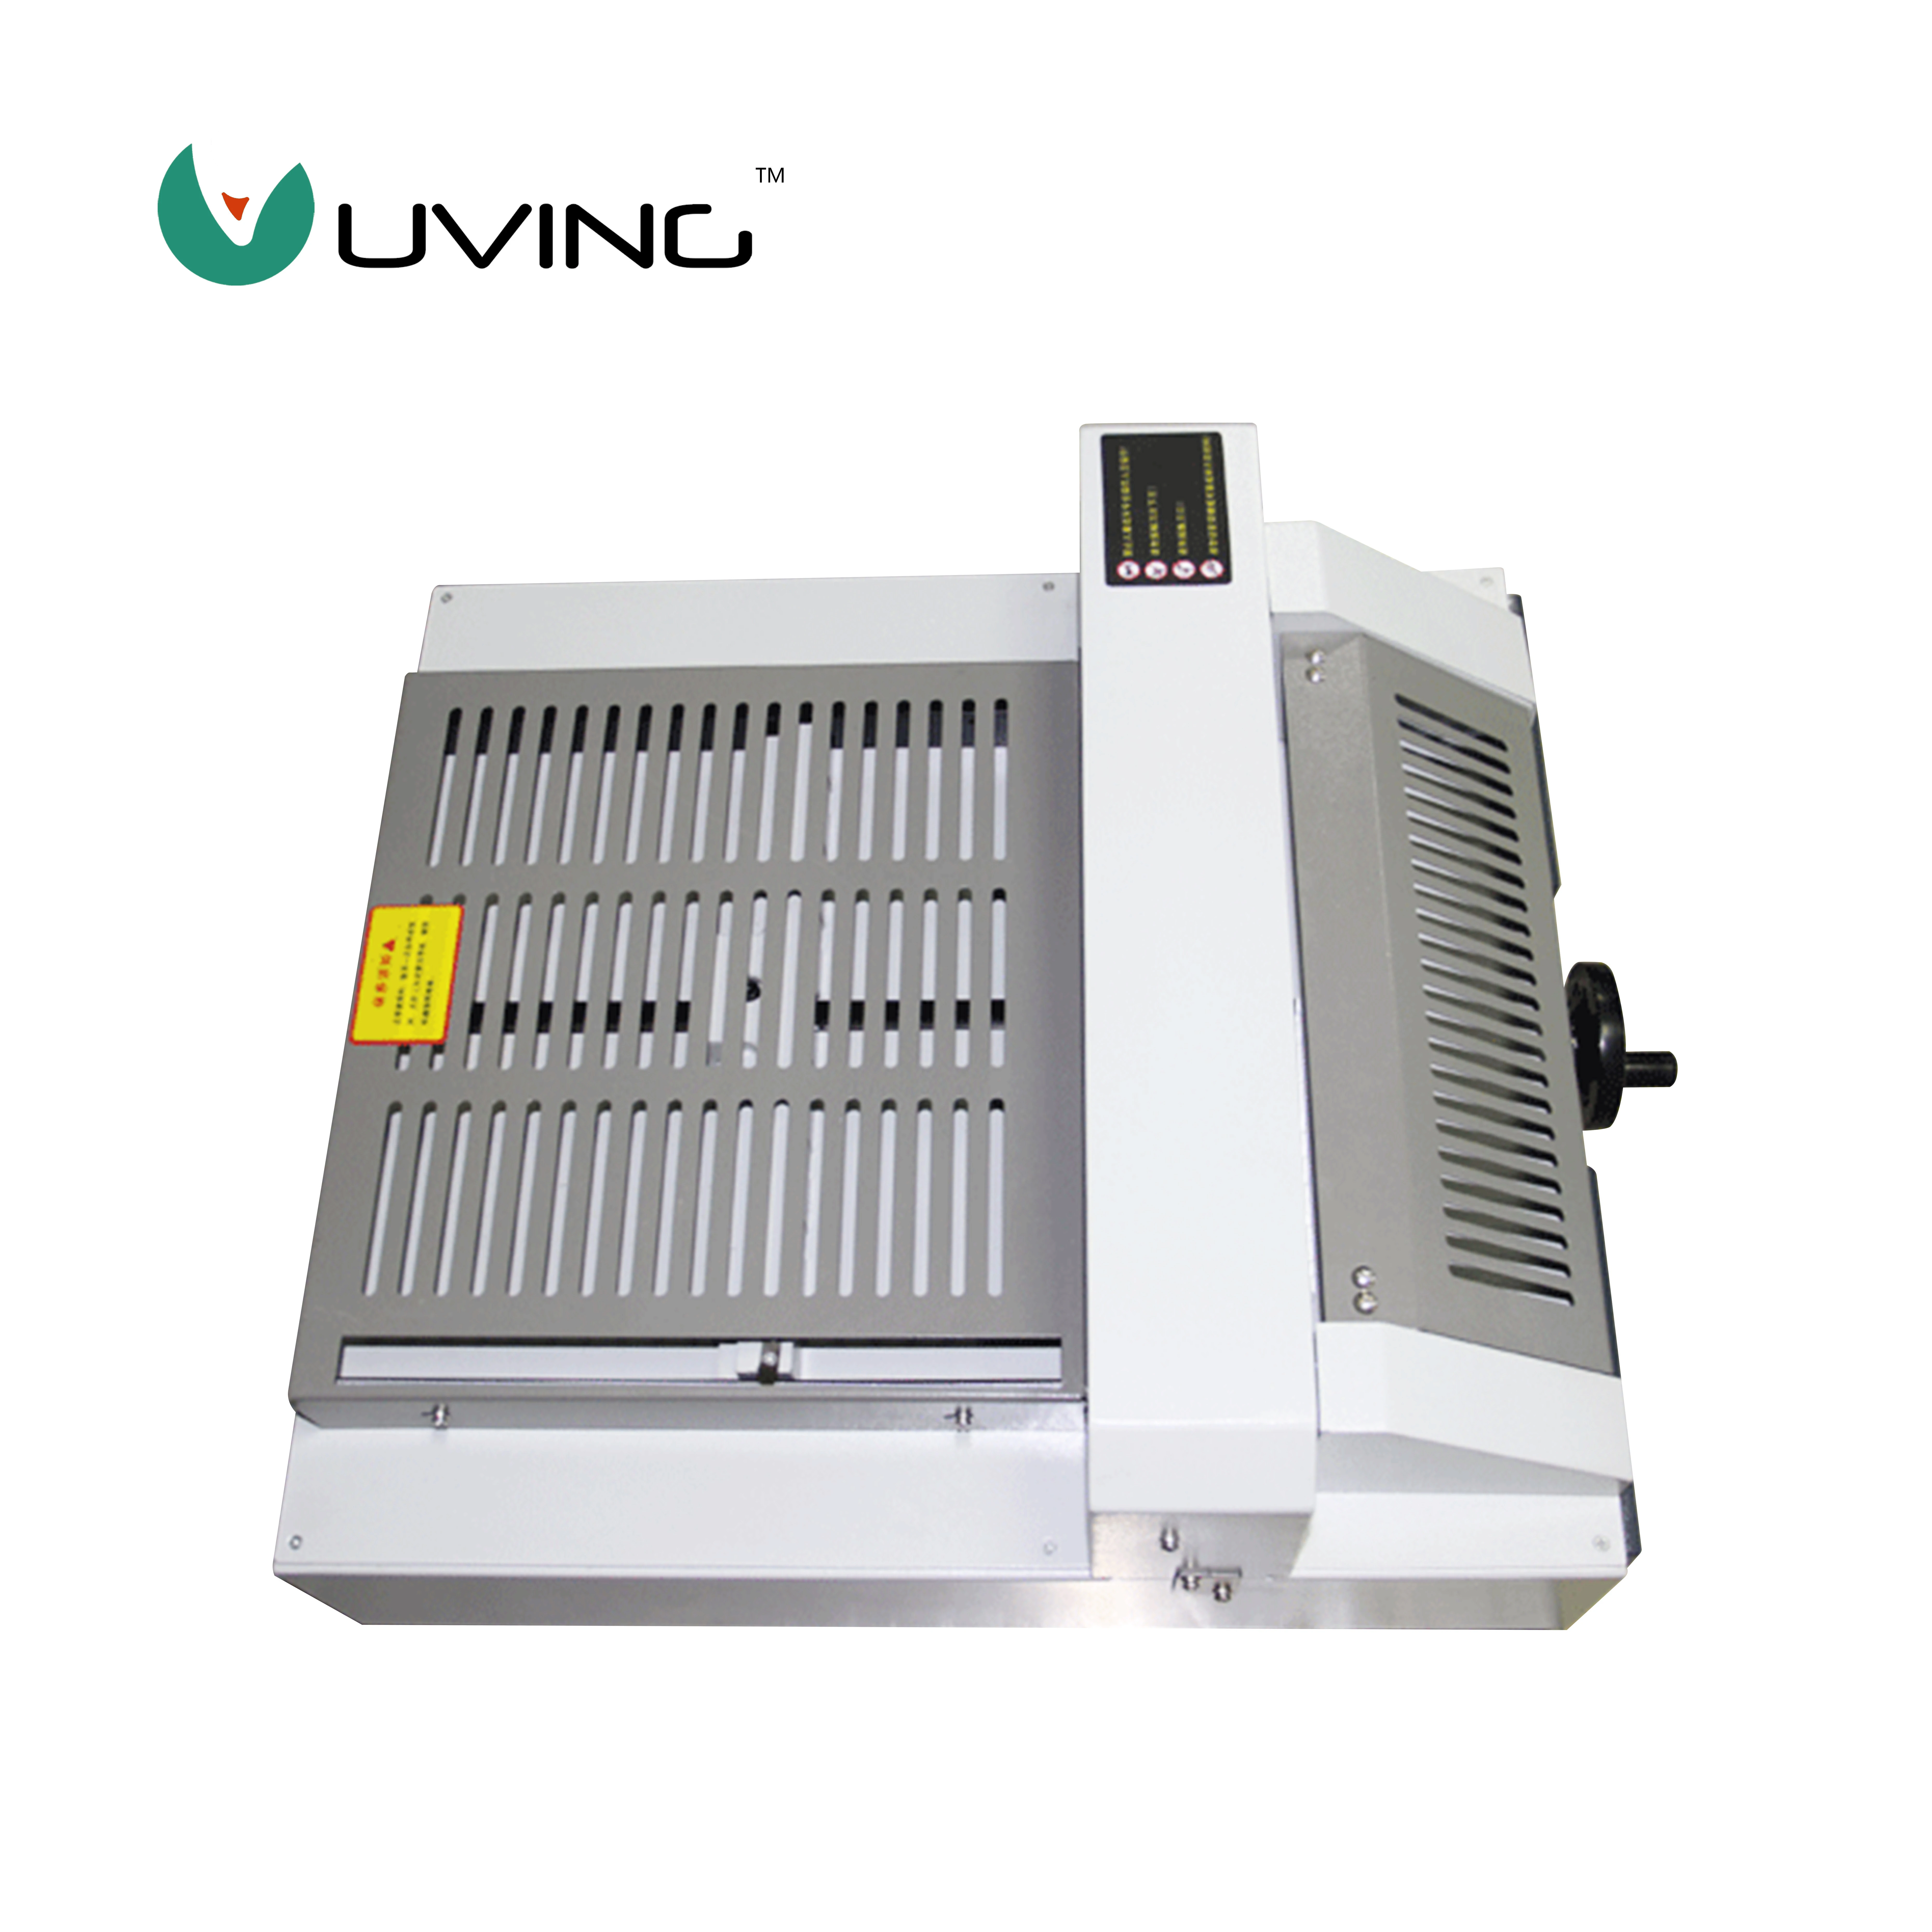 U-C320V+ 320mm A3 electric paper cutter desktop guillotine